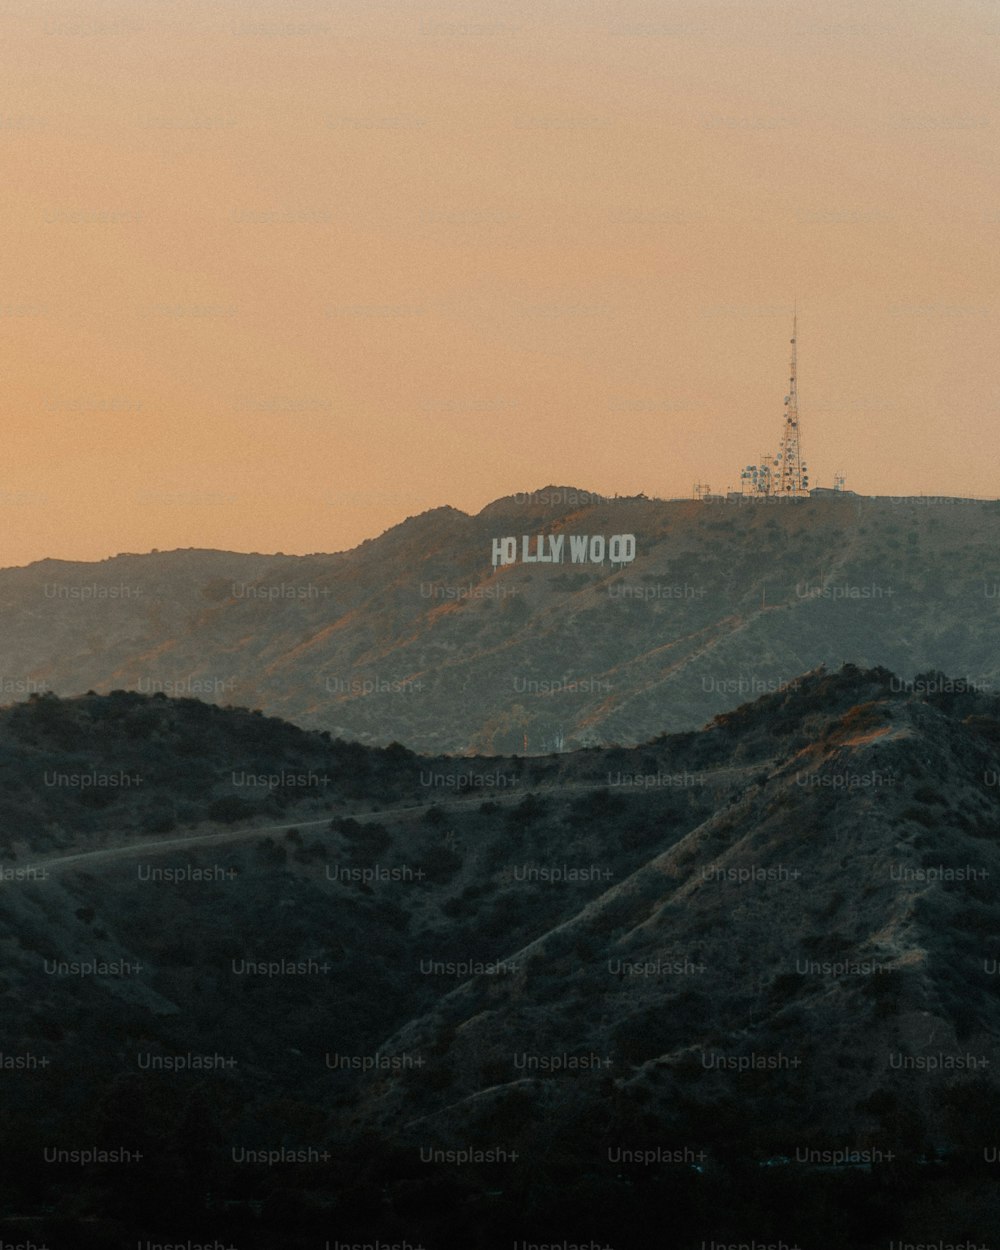 Das ikonische Hollywood-Schild in Los Angeles, Kalifornien